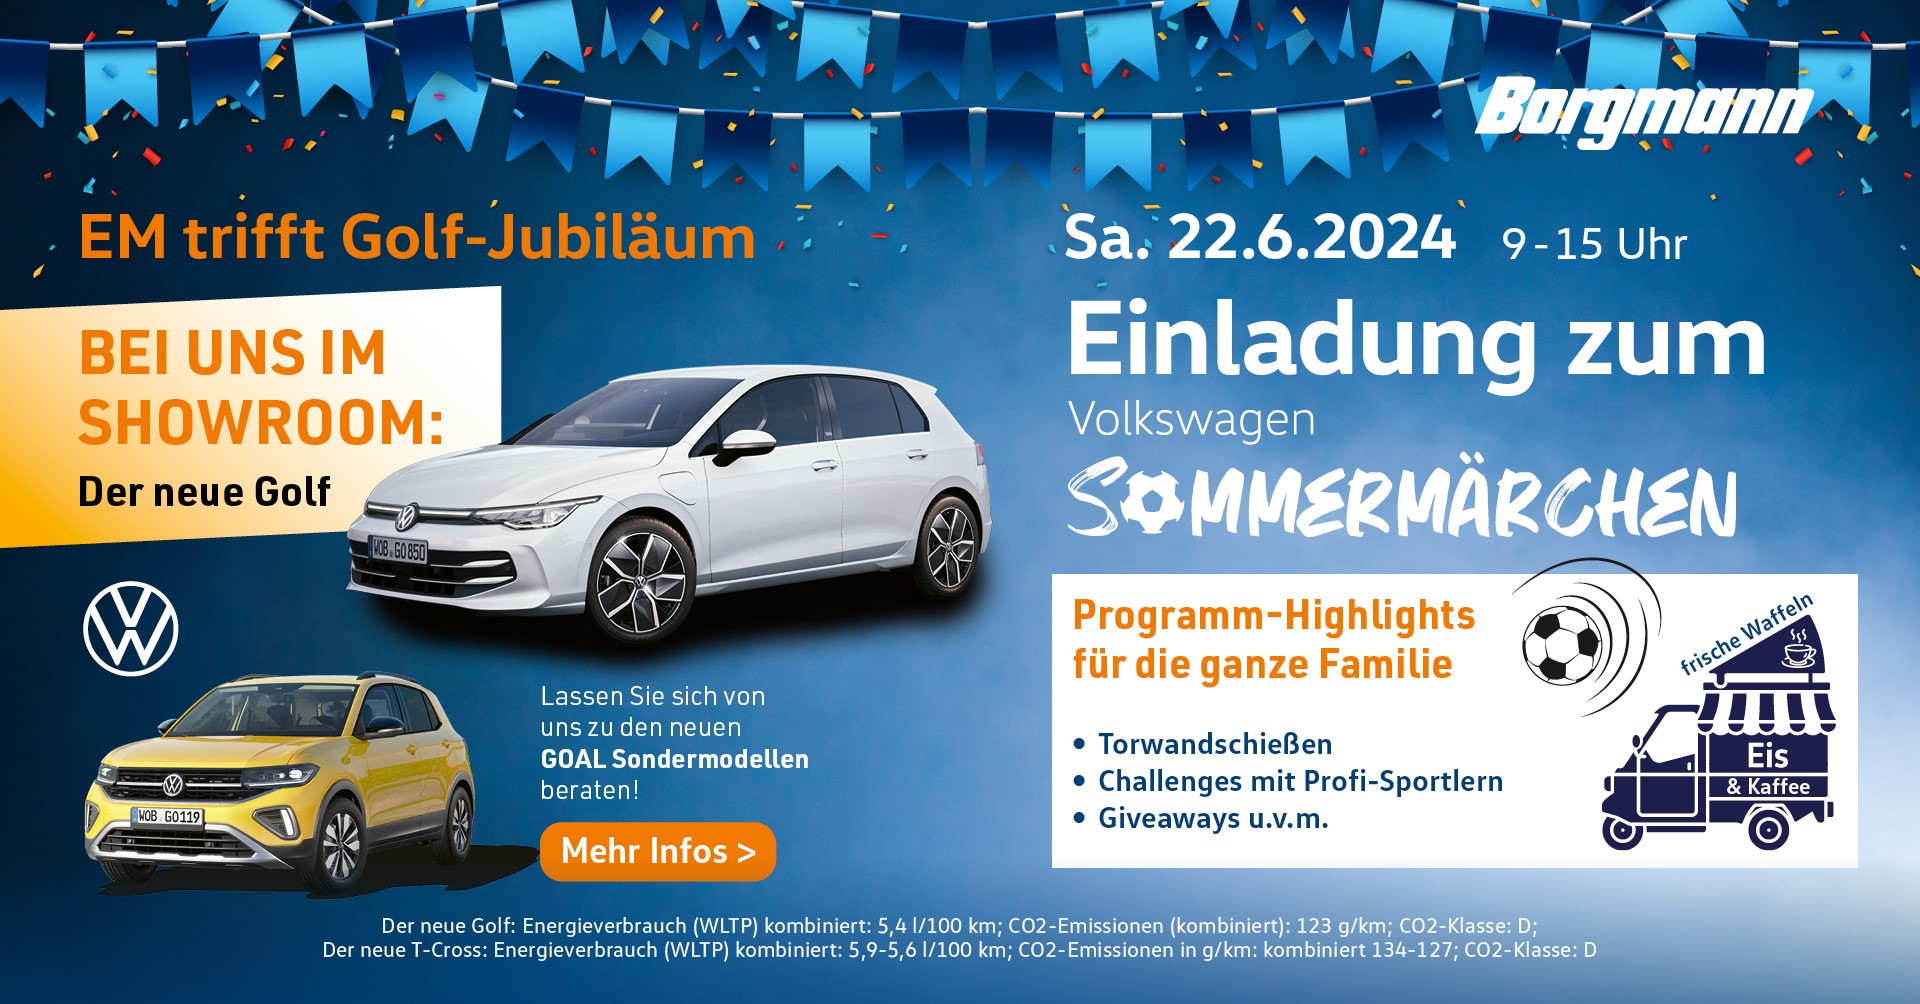 VW Sommermärchen am 22.06.2024